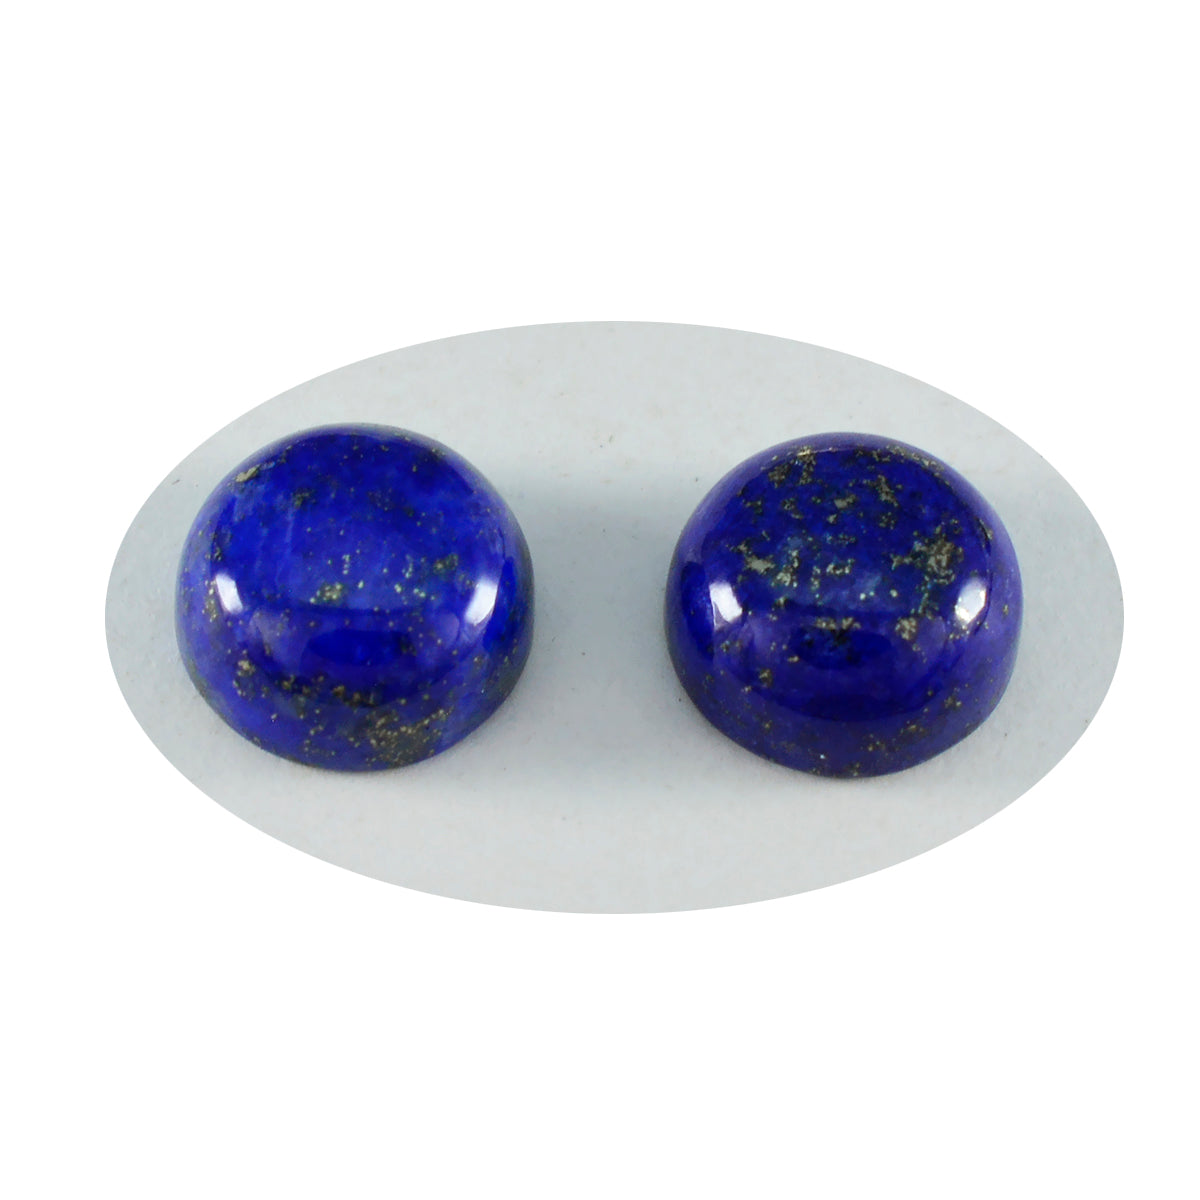 Riyogems 1 Stück blauer Lapislazuli-Cabochon, 9 x 9 mm, runde Form, Edelstein von erstaunlicher Qualität